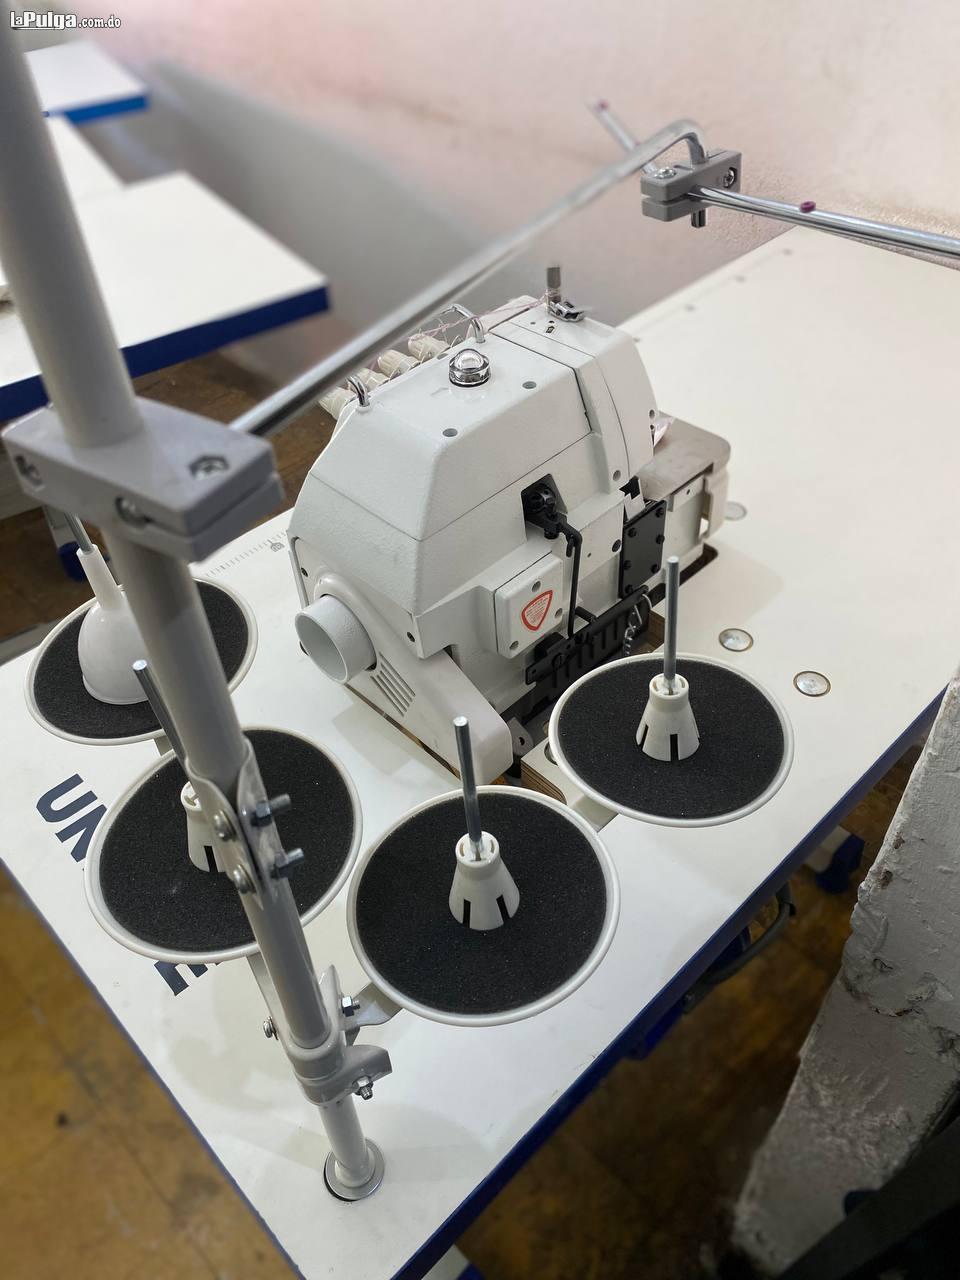 Maquinas de coser mero alta velocidad Overlock marca Siruba 4 hilos Foto 7142513-3.jpg